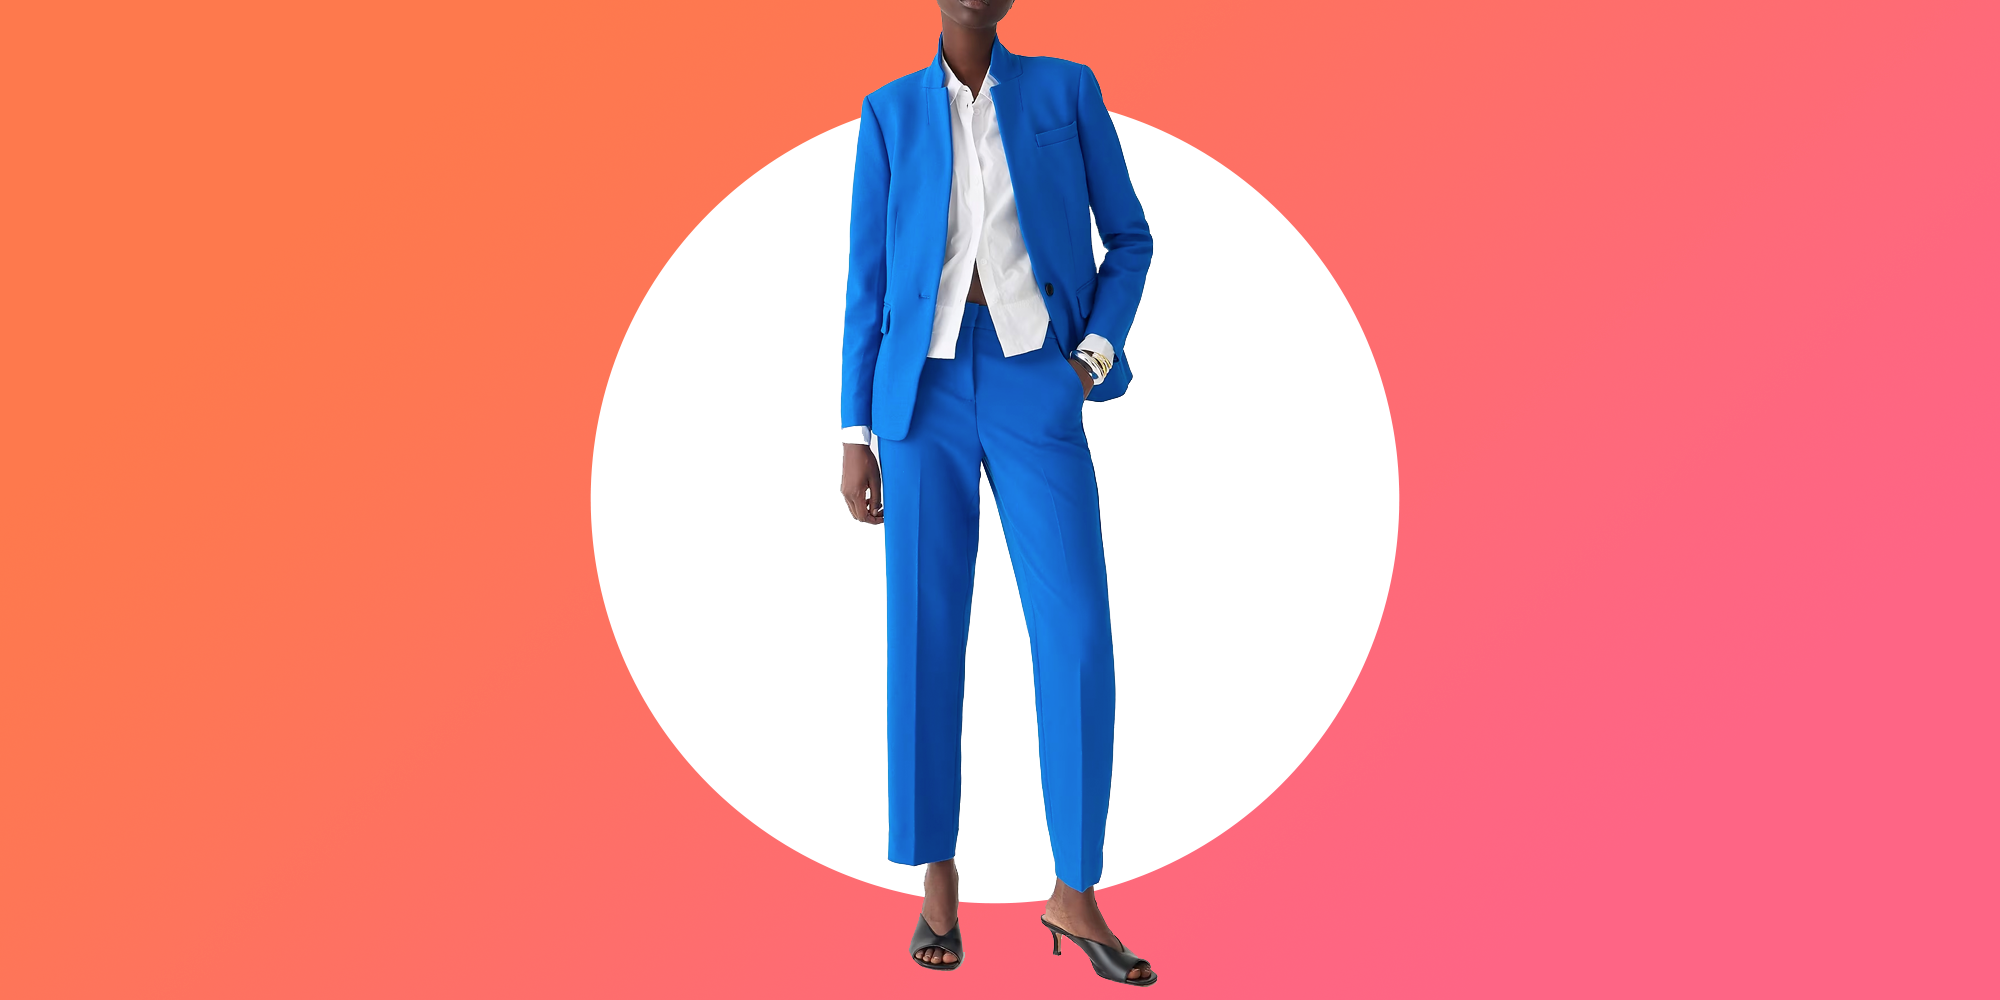 Sky Blue Pant Suit for Women, Womens Wedding Suit Set , Dressy Pant Suits  for Women , Two Piece Suit, Women Formal Wear, Womens Suit, -  Canada